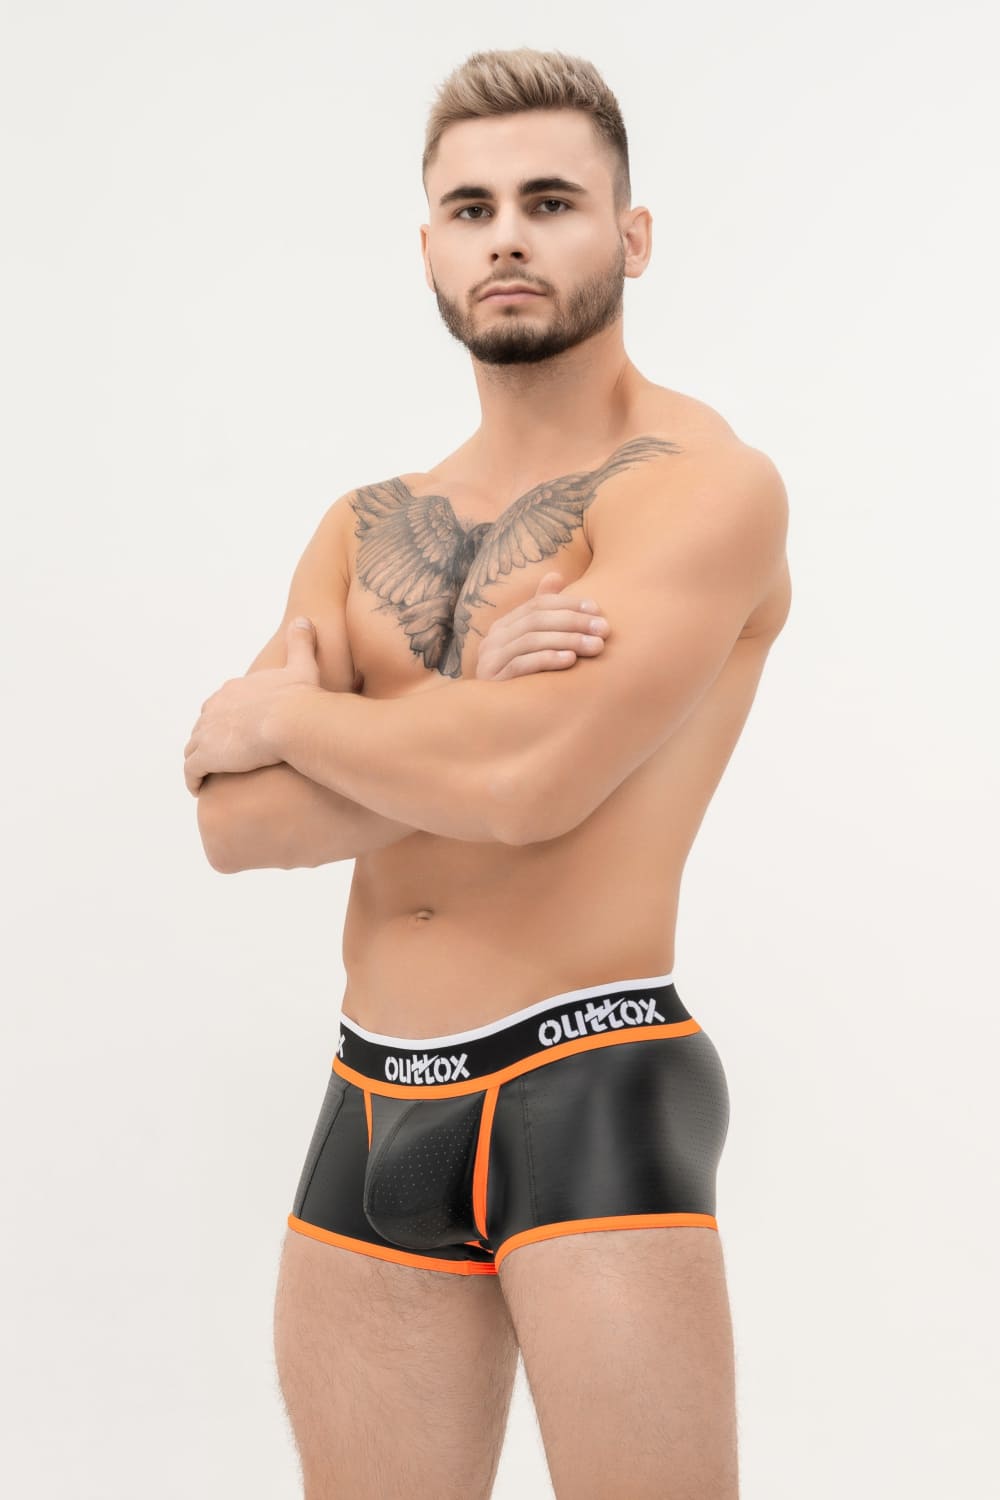 Outtox. Shorts mit offenem Rücken und Druckknopf-Codpiece. Schwarz+Orange